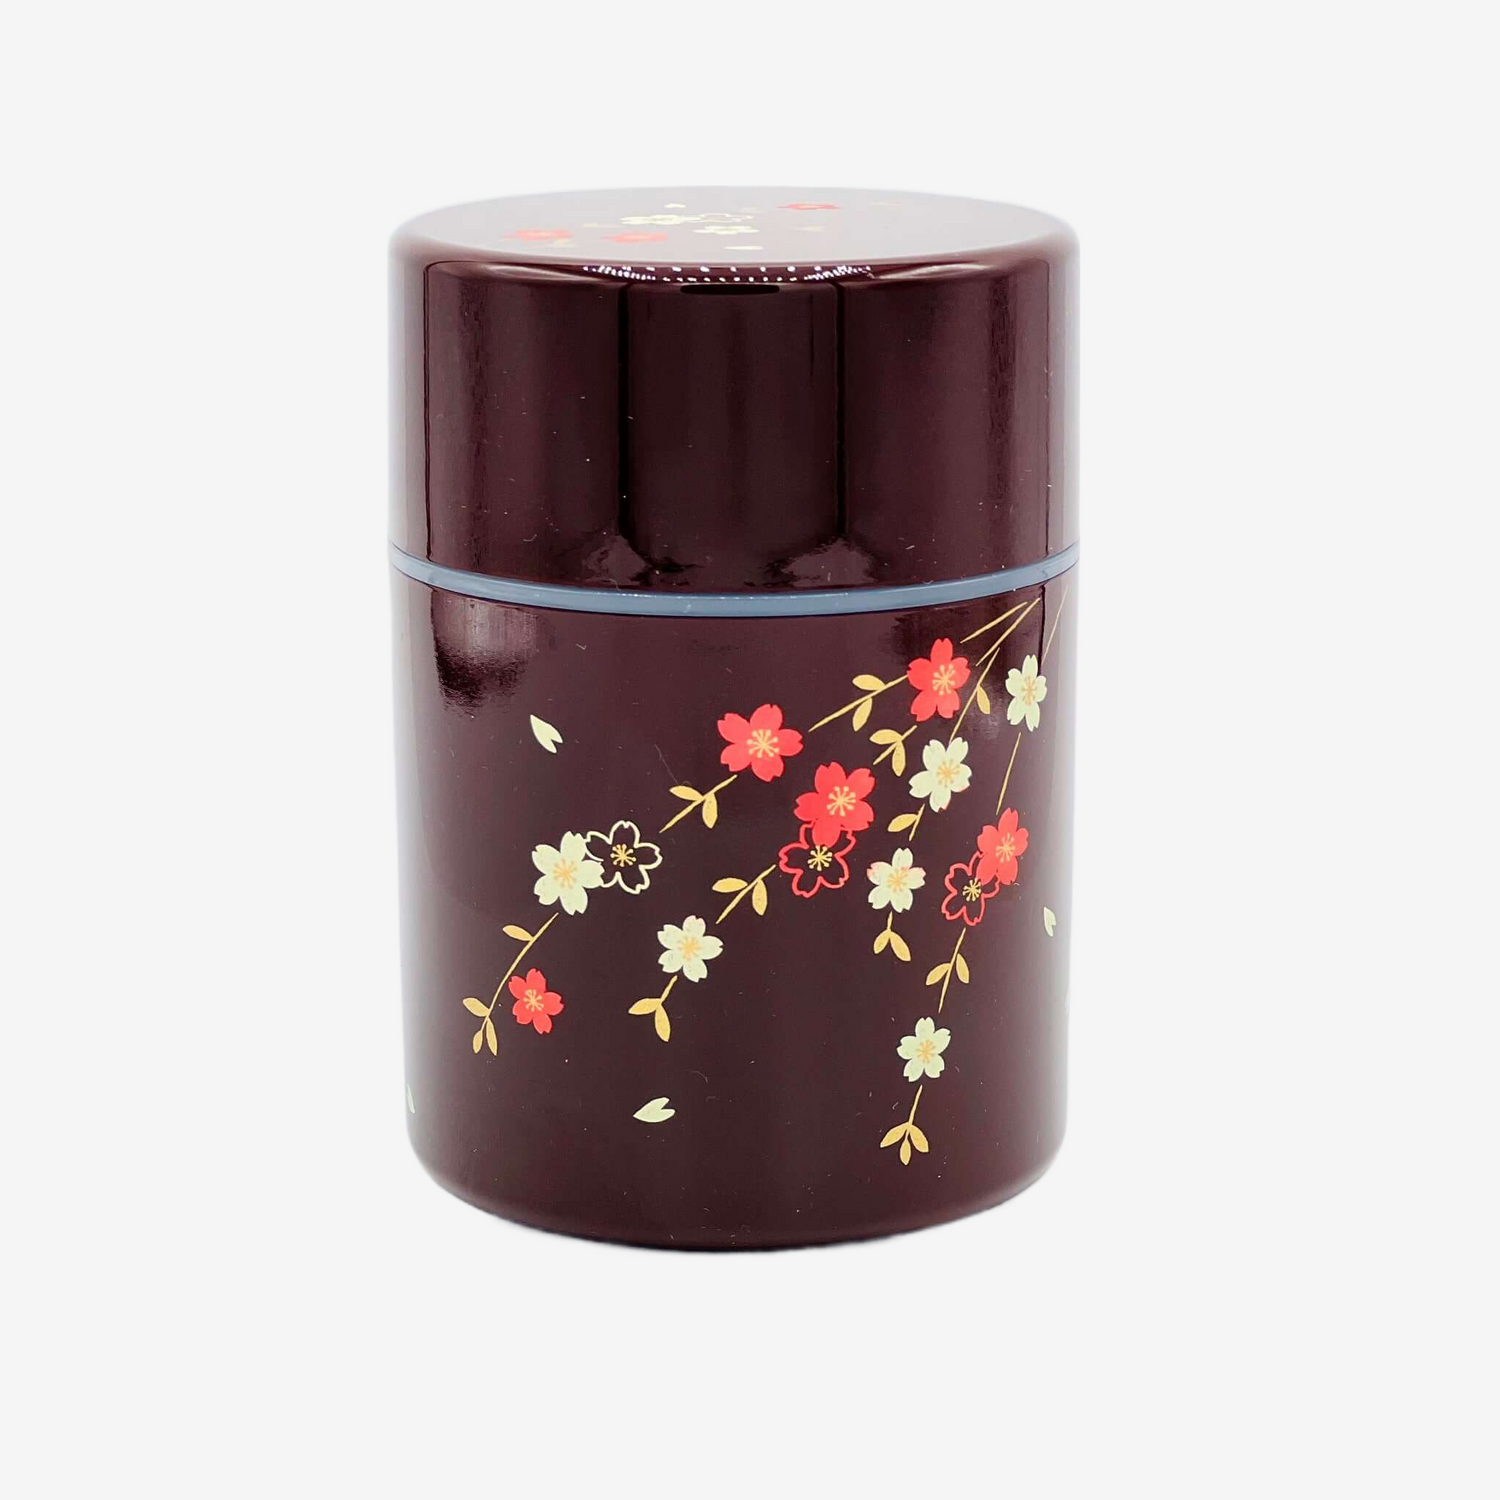 Tame Hana Red Lacquered Resin Tea Canister - Japanese Chazutsu Teaware Inoue Tea